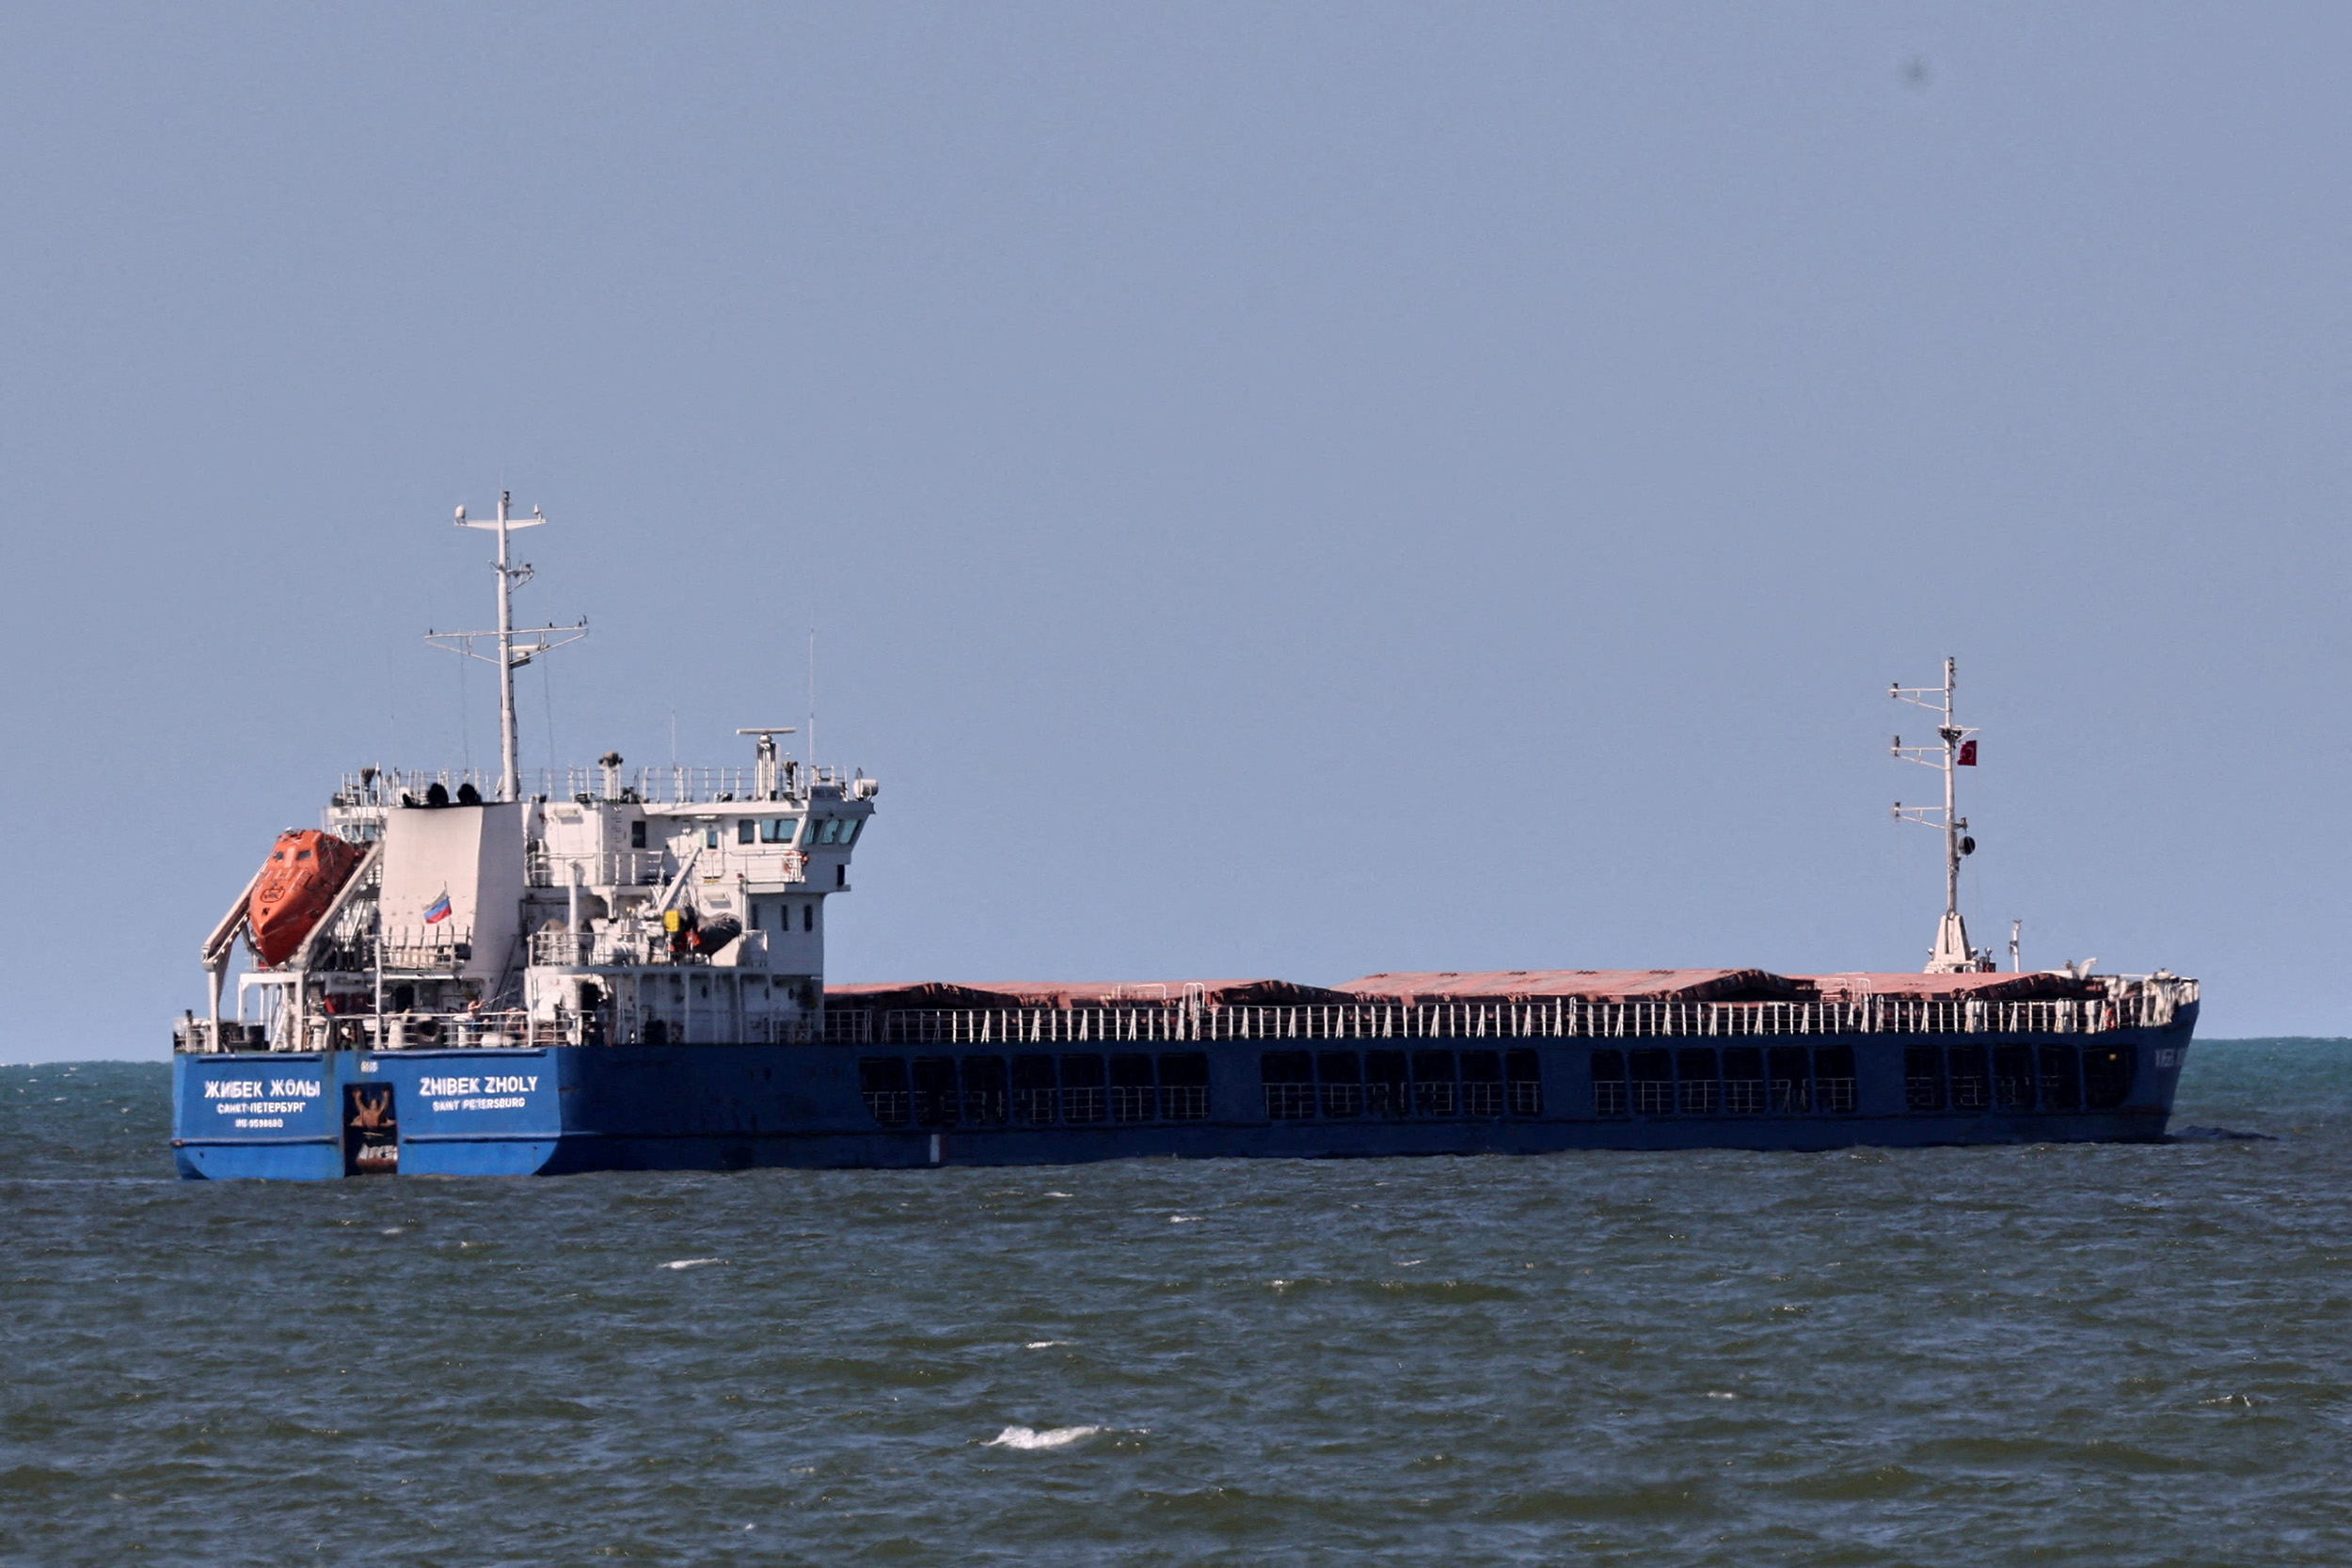 سفينة الشحن التي ترفع العلم الروسي زهيبك زولي شوهدت قبالة ساحل ميناء كاراسو التركي على البحر الأسود في 2 يوليو.